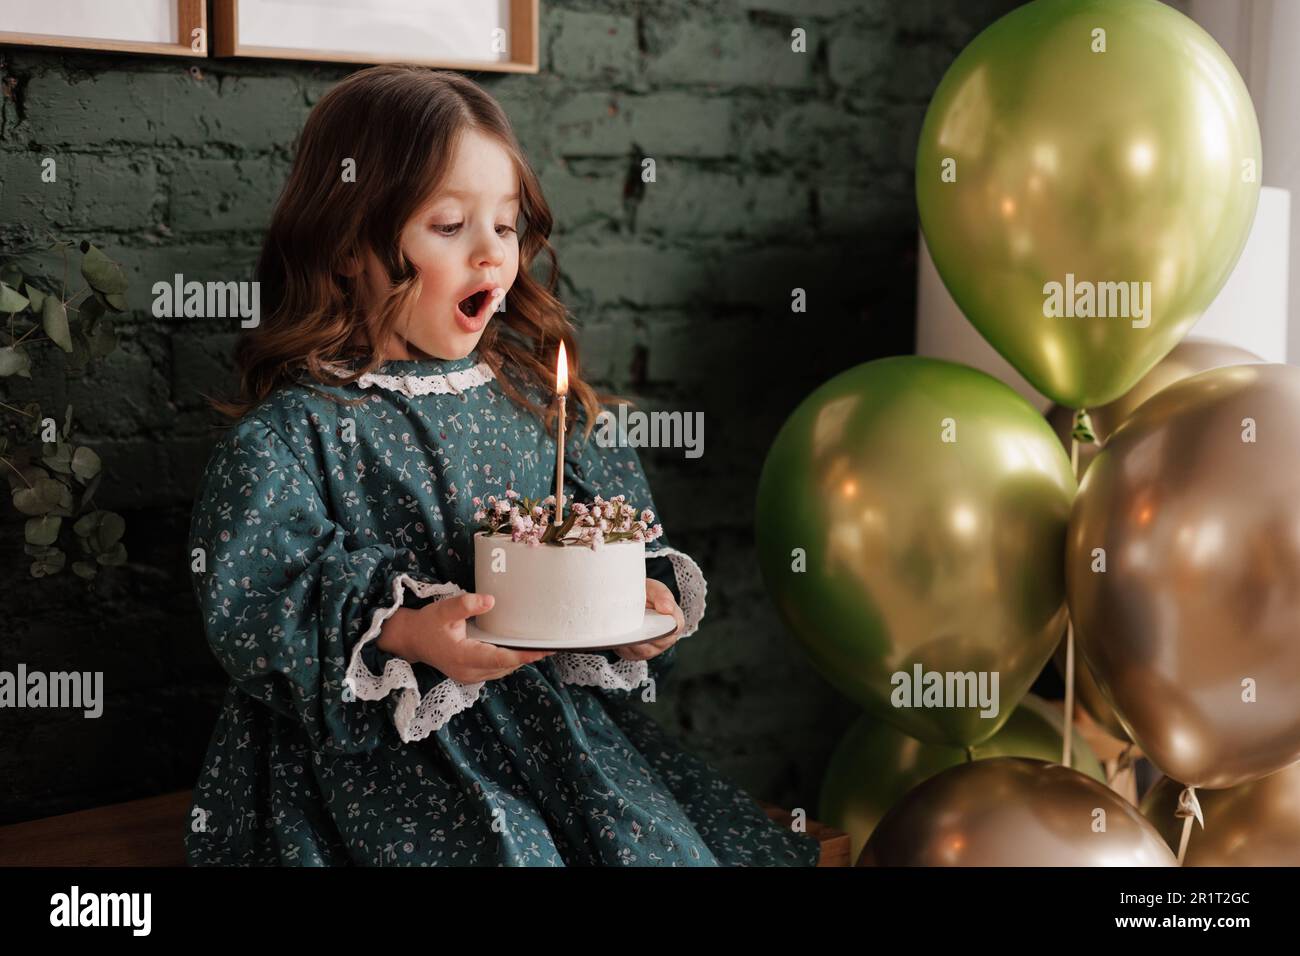 Chica de cumpleaños 4-5 años de edad está celebrando el cumpleaños